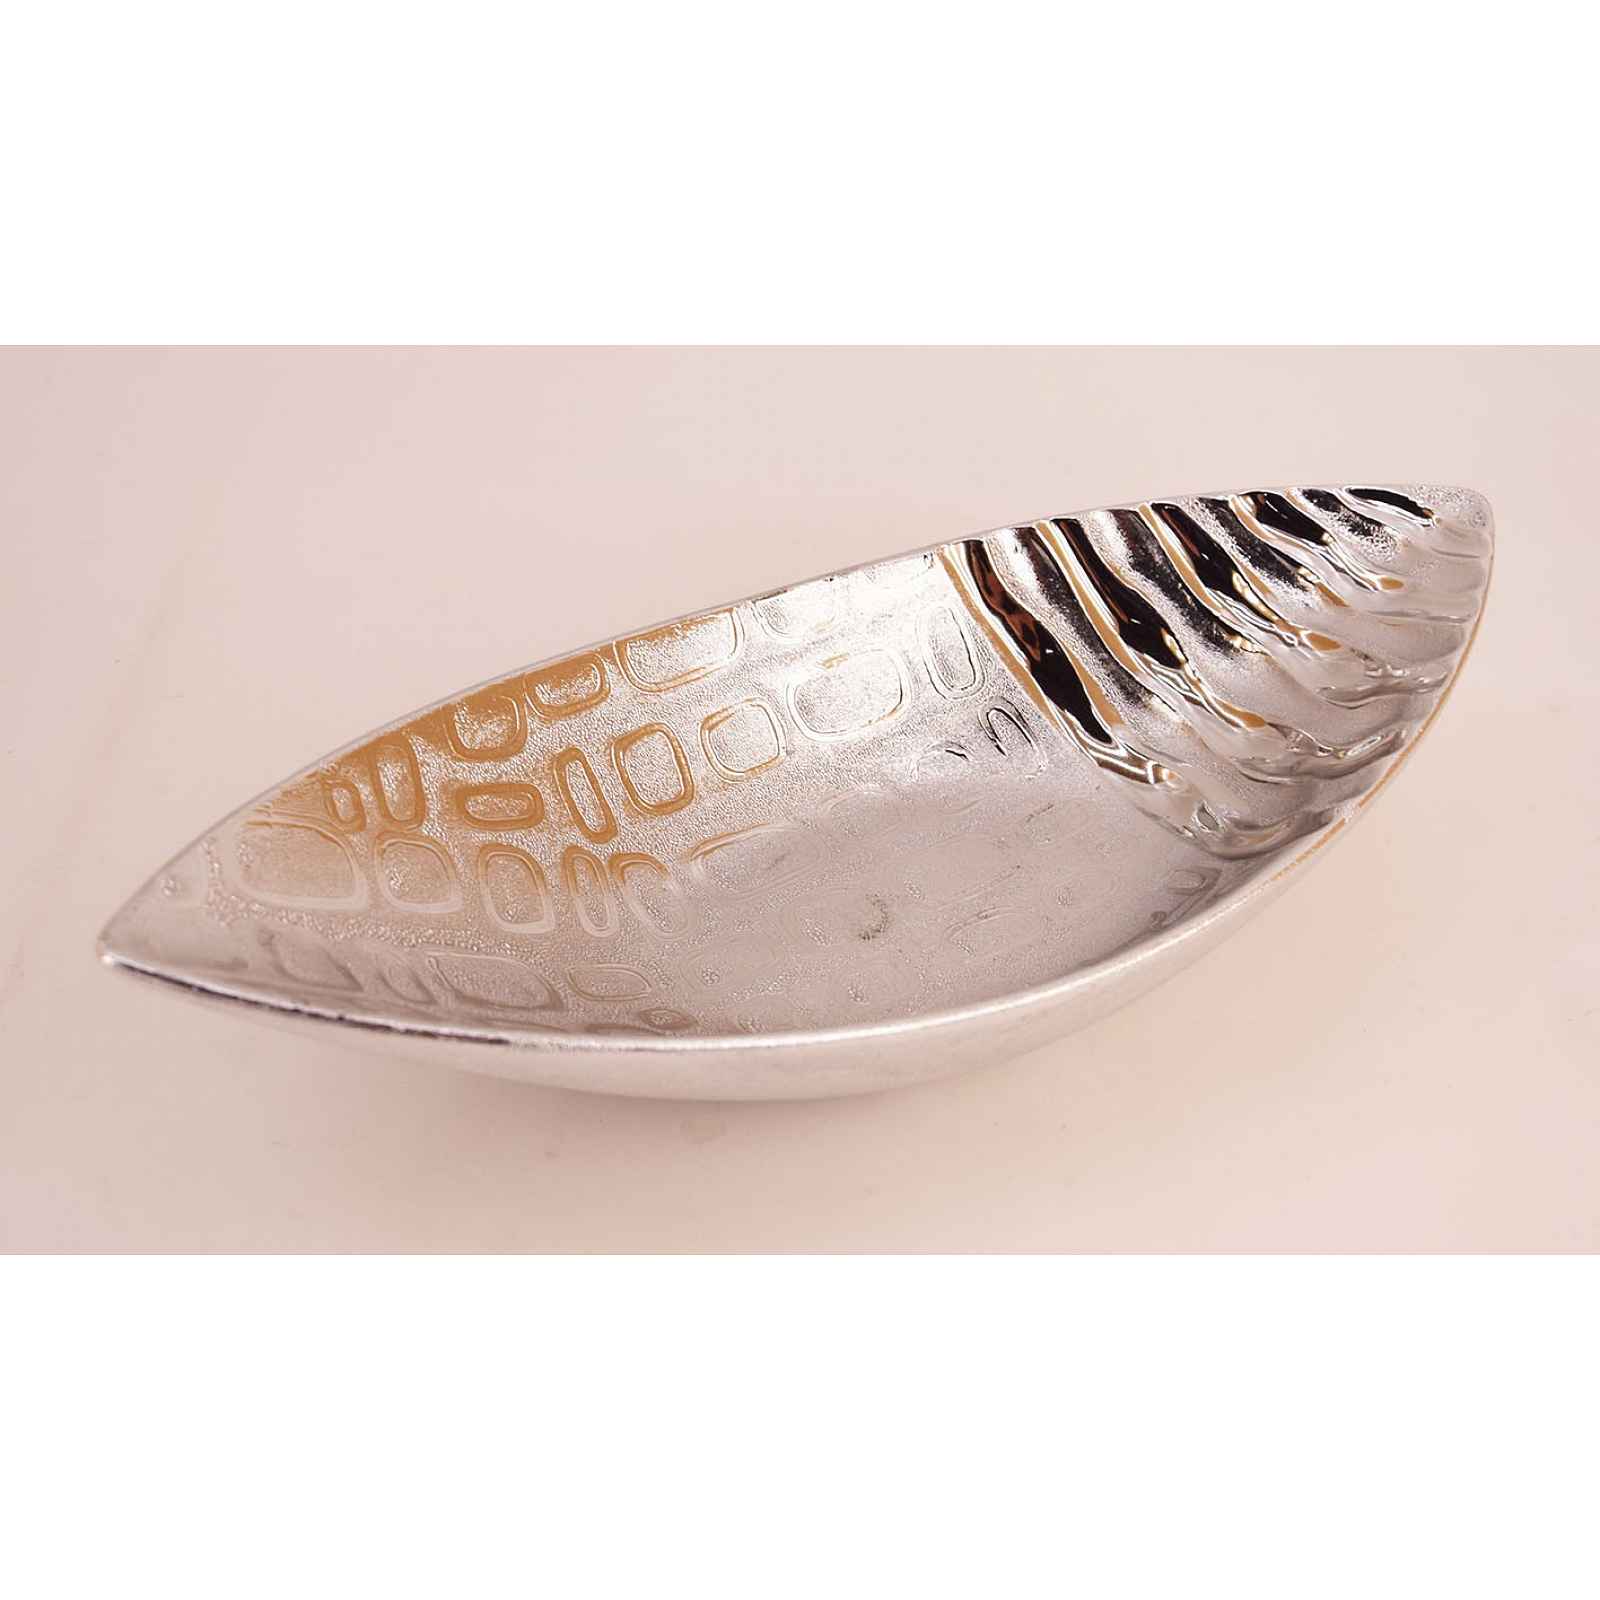 Dekorativní mísa stříbrná, žebrovaná, 33 cm